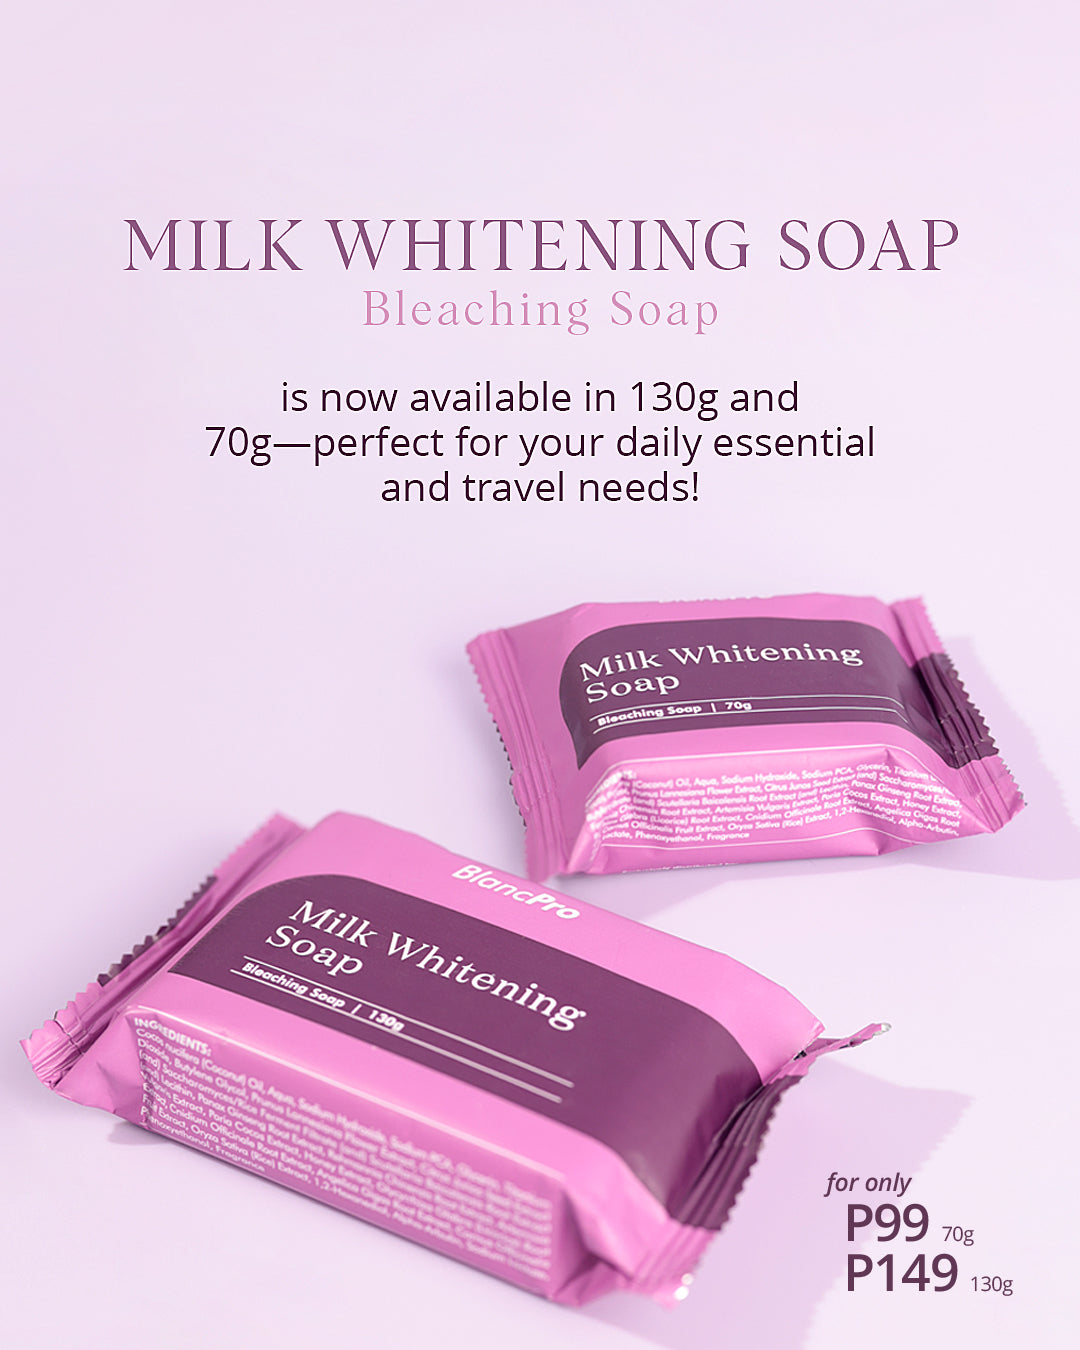 BlancPRO Milk Whitening Bar Bleaching Soap